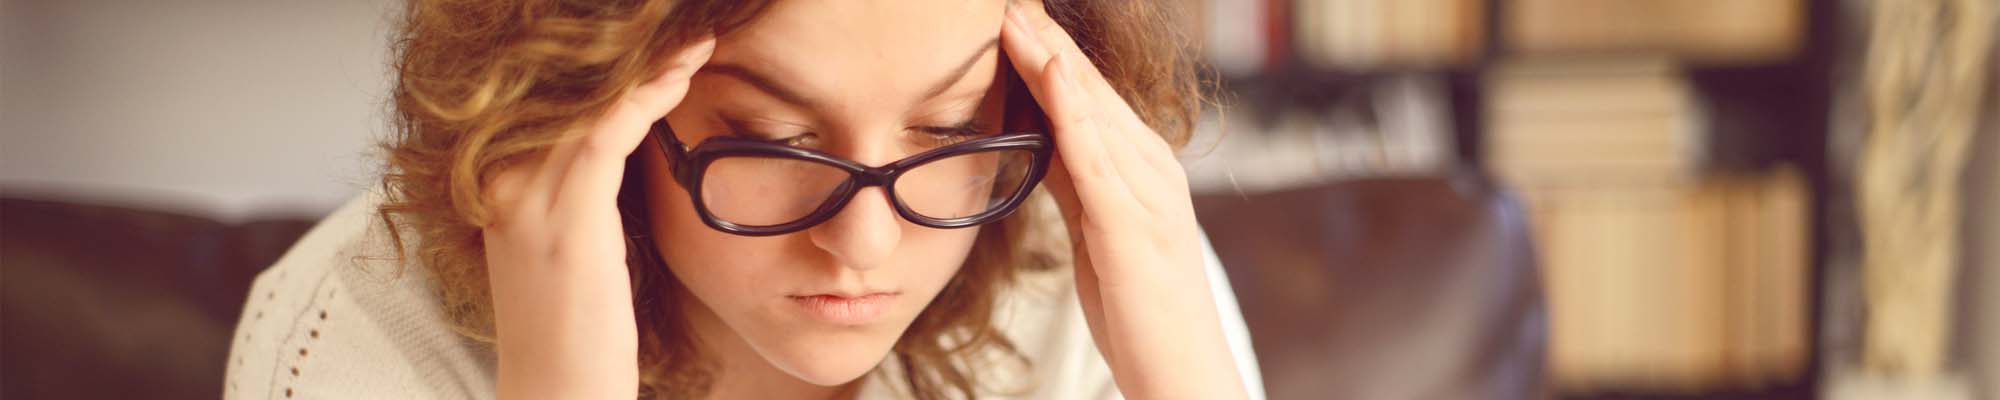 Chiropractic Kenosha WI Headaches And Migraines